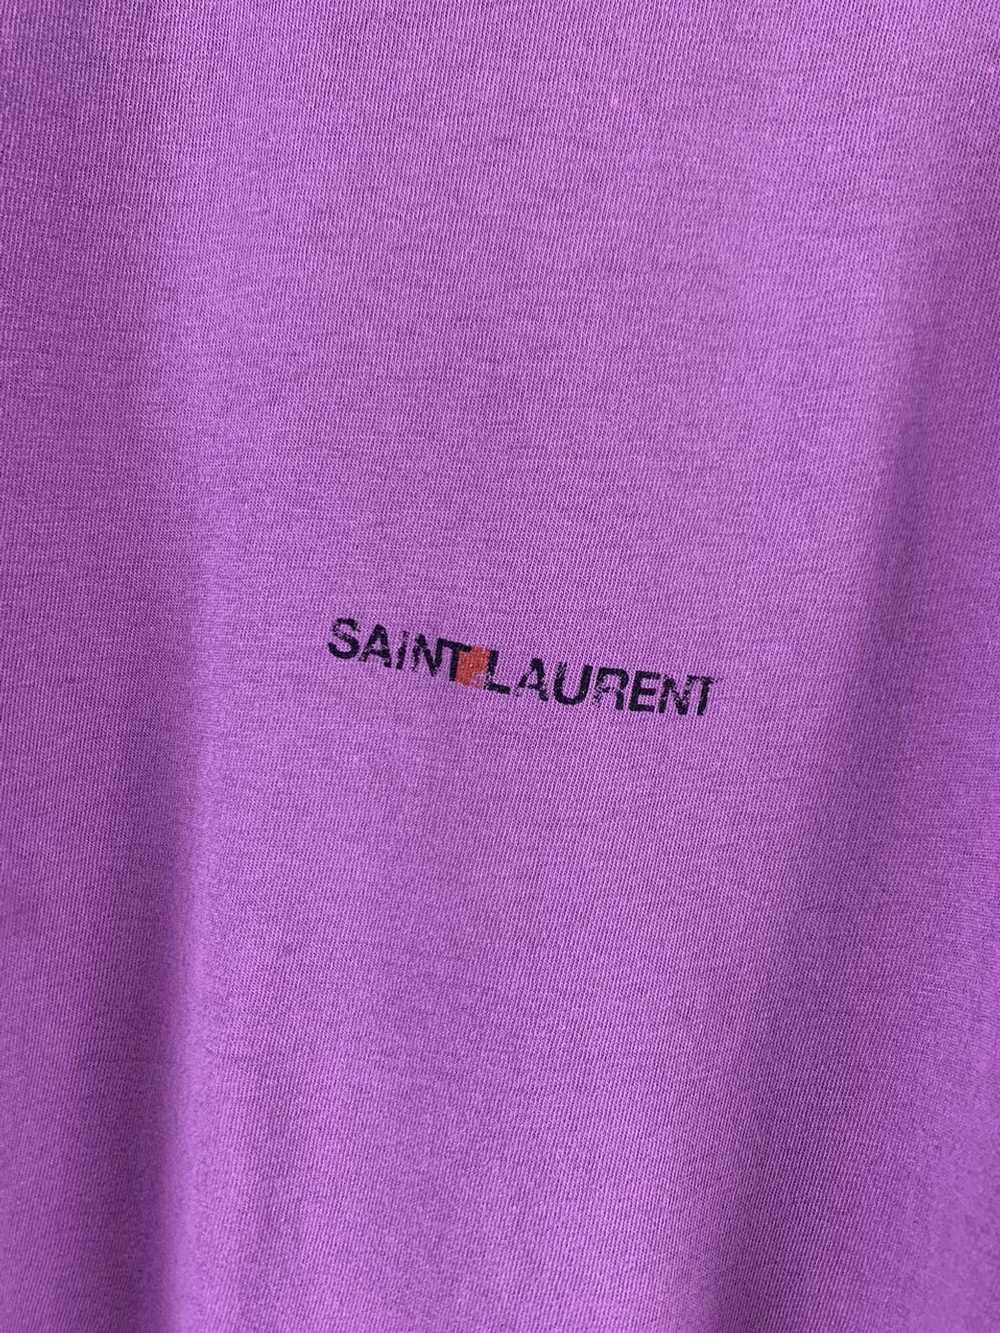 Saint Laurent Paris Saint Laurent T-Shirt - image 3